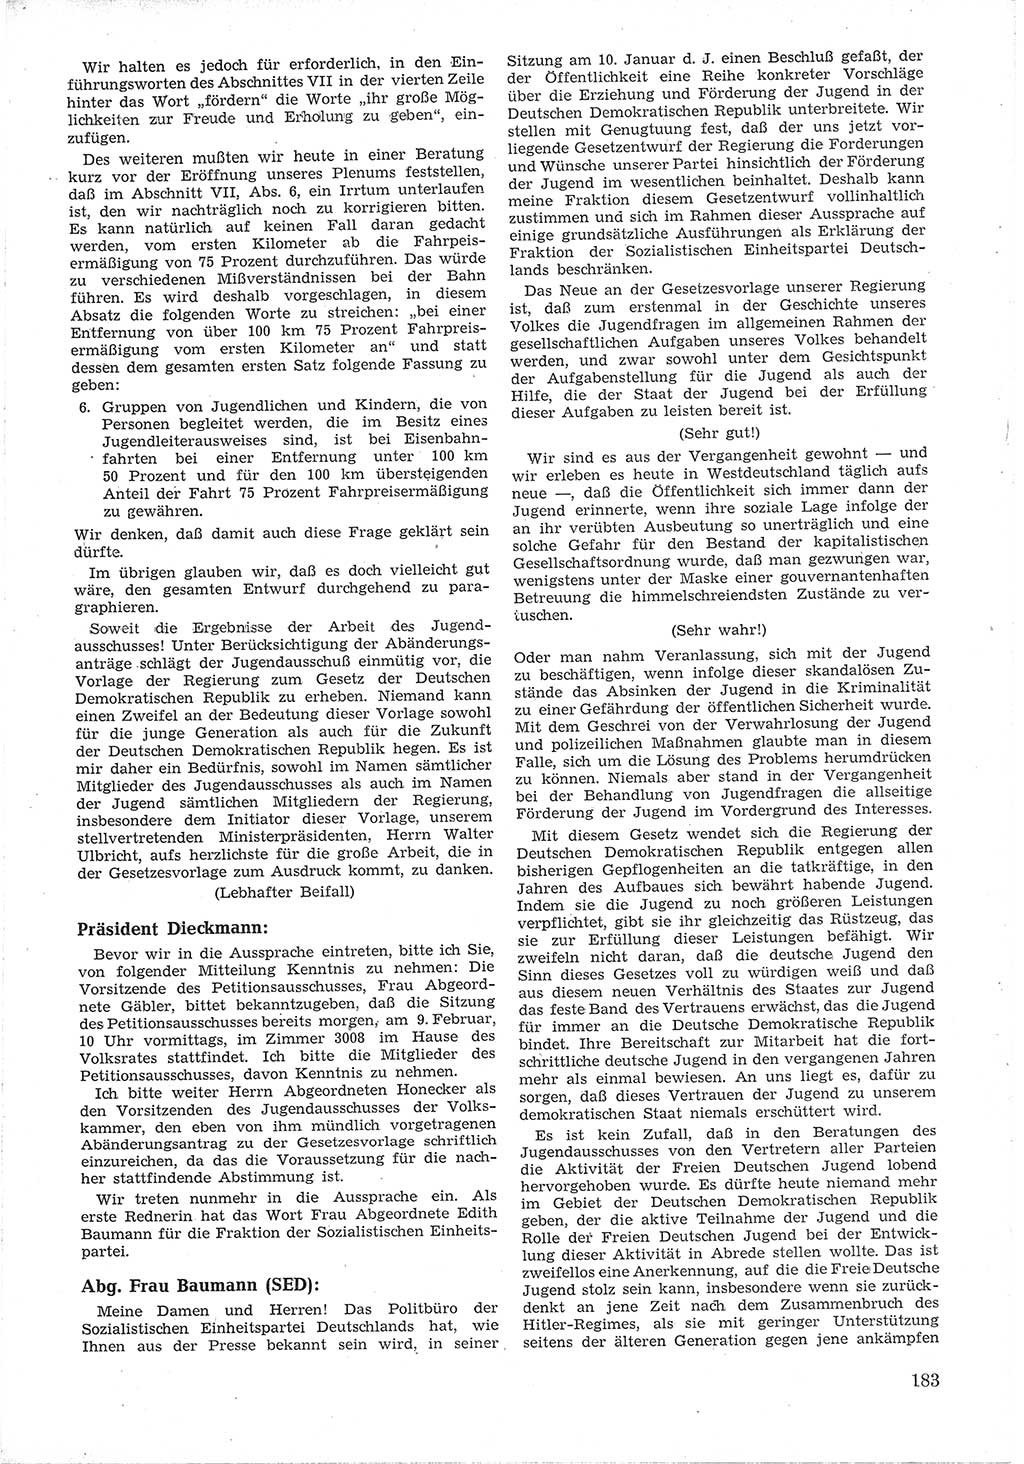 Provisorische Volkskammer (VK) der Deutschen Demokratischen Republik (DDR) 1949-1950, Dokument 195 (Prov. VK DDR 1949-1950, Dok. 195)